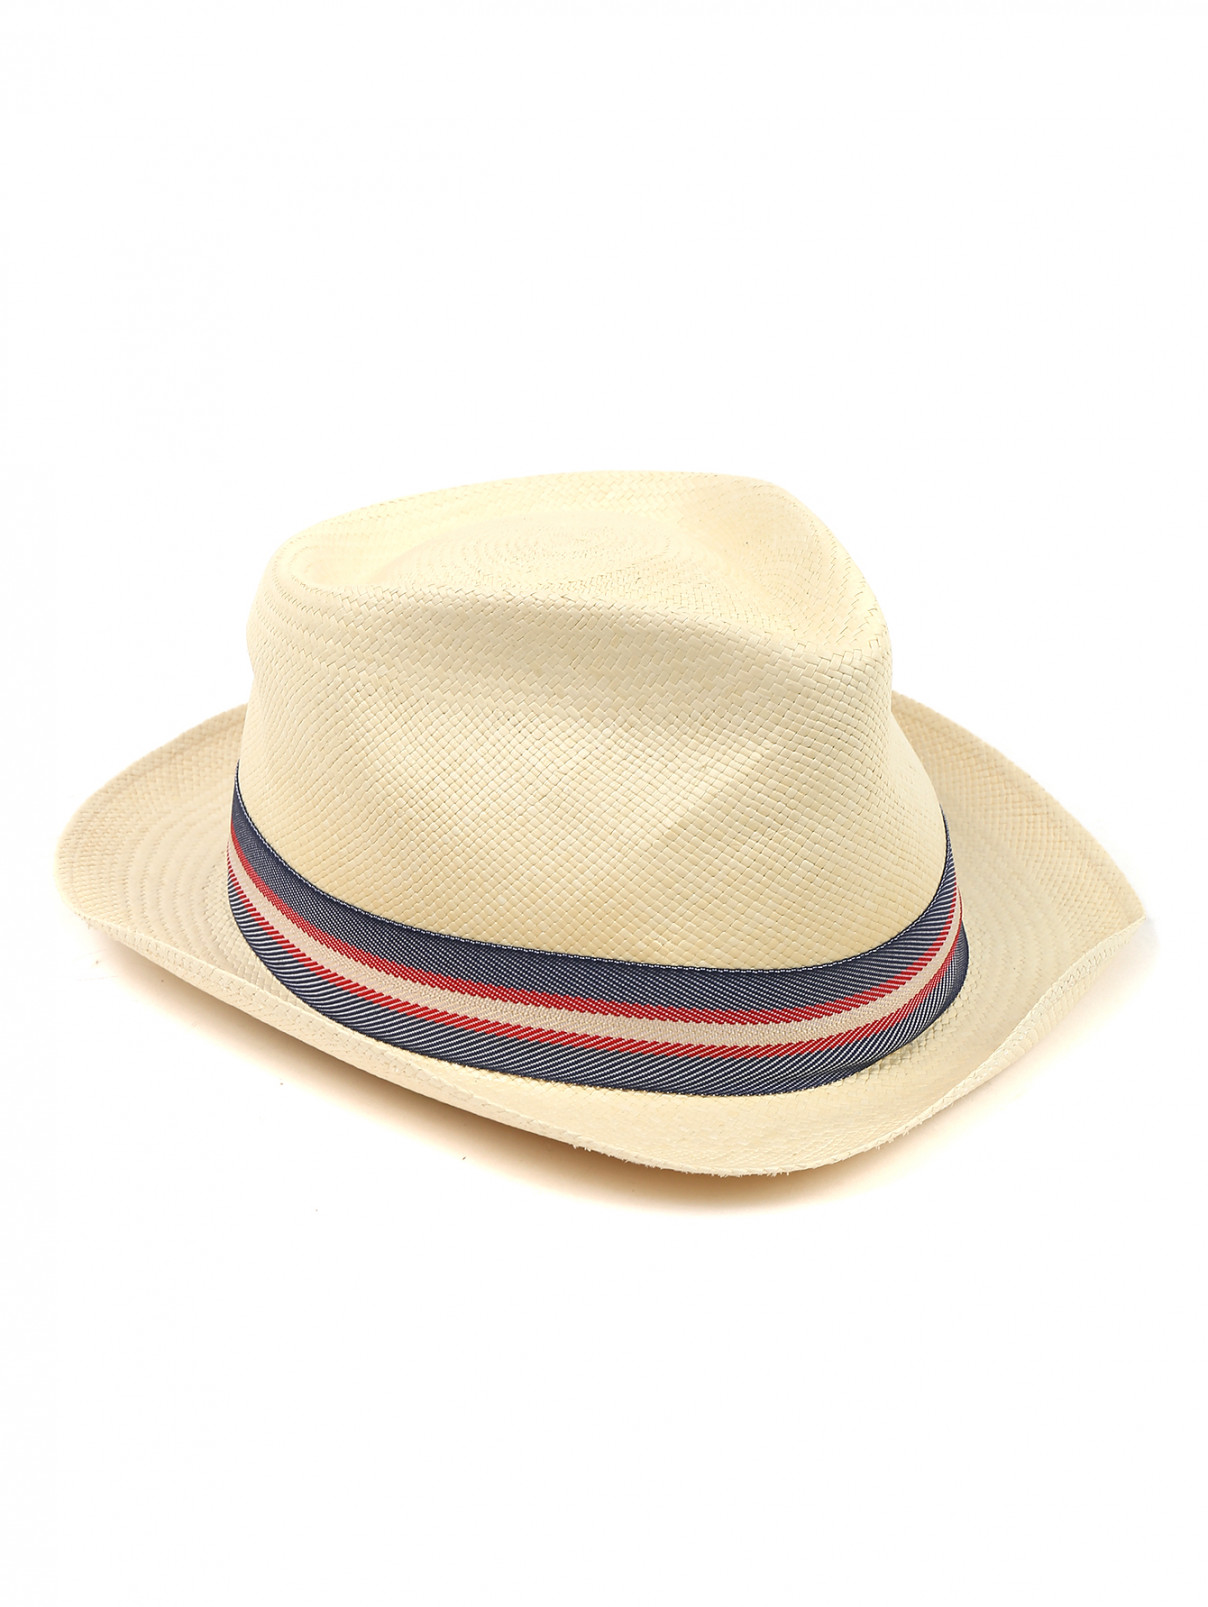 Шляпа соломенная с контрастной вставкой Stetson  –  Общий вид  – Цвет:  Желтый